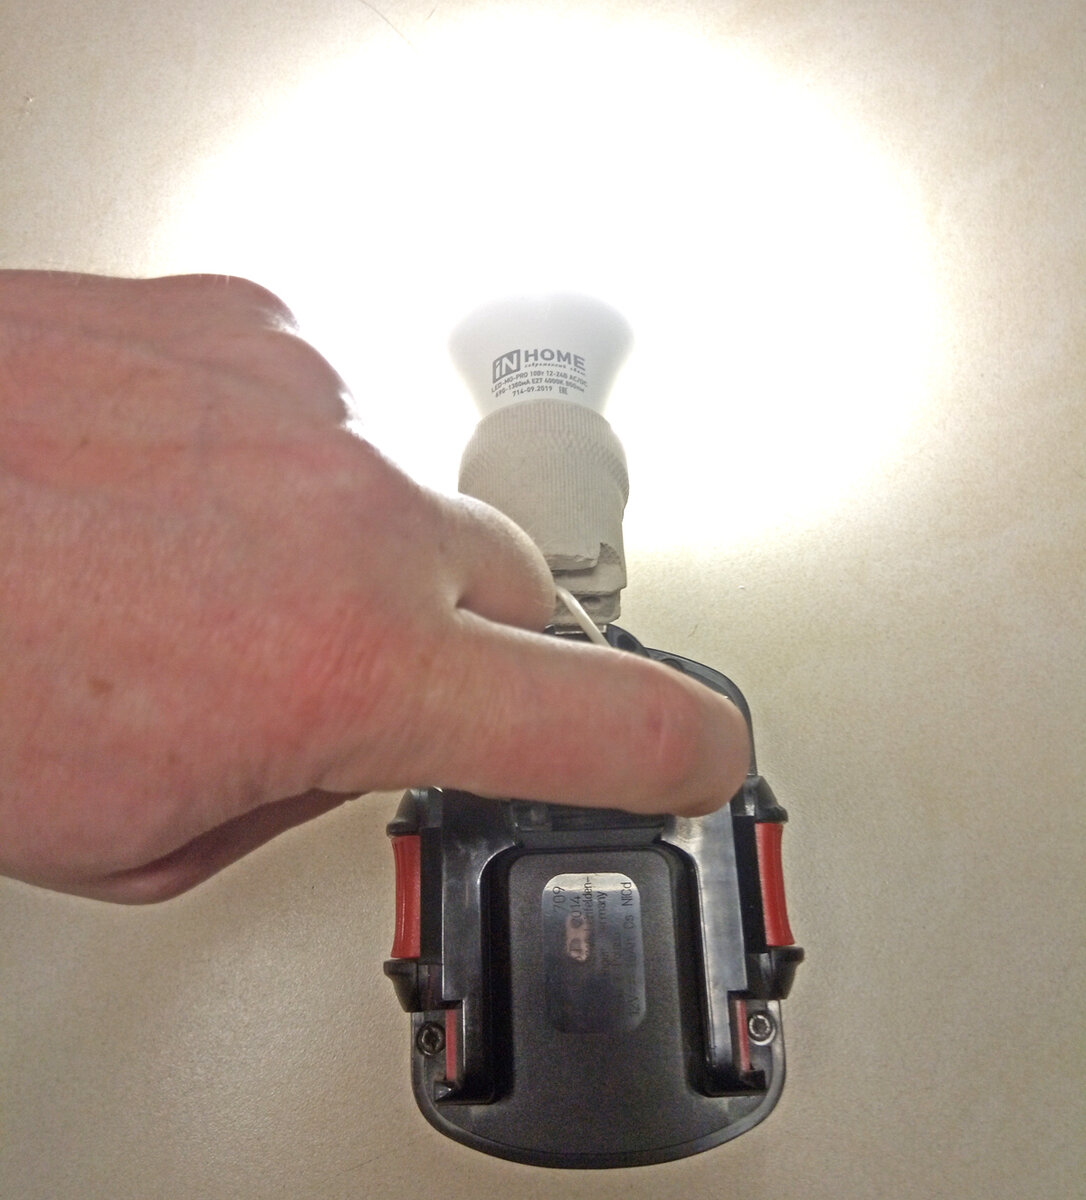 Светодиодная лампа на 12 Вольт - яркий свет у вас в кармане: полезный совет для ремонта и стройки